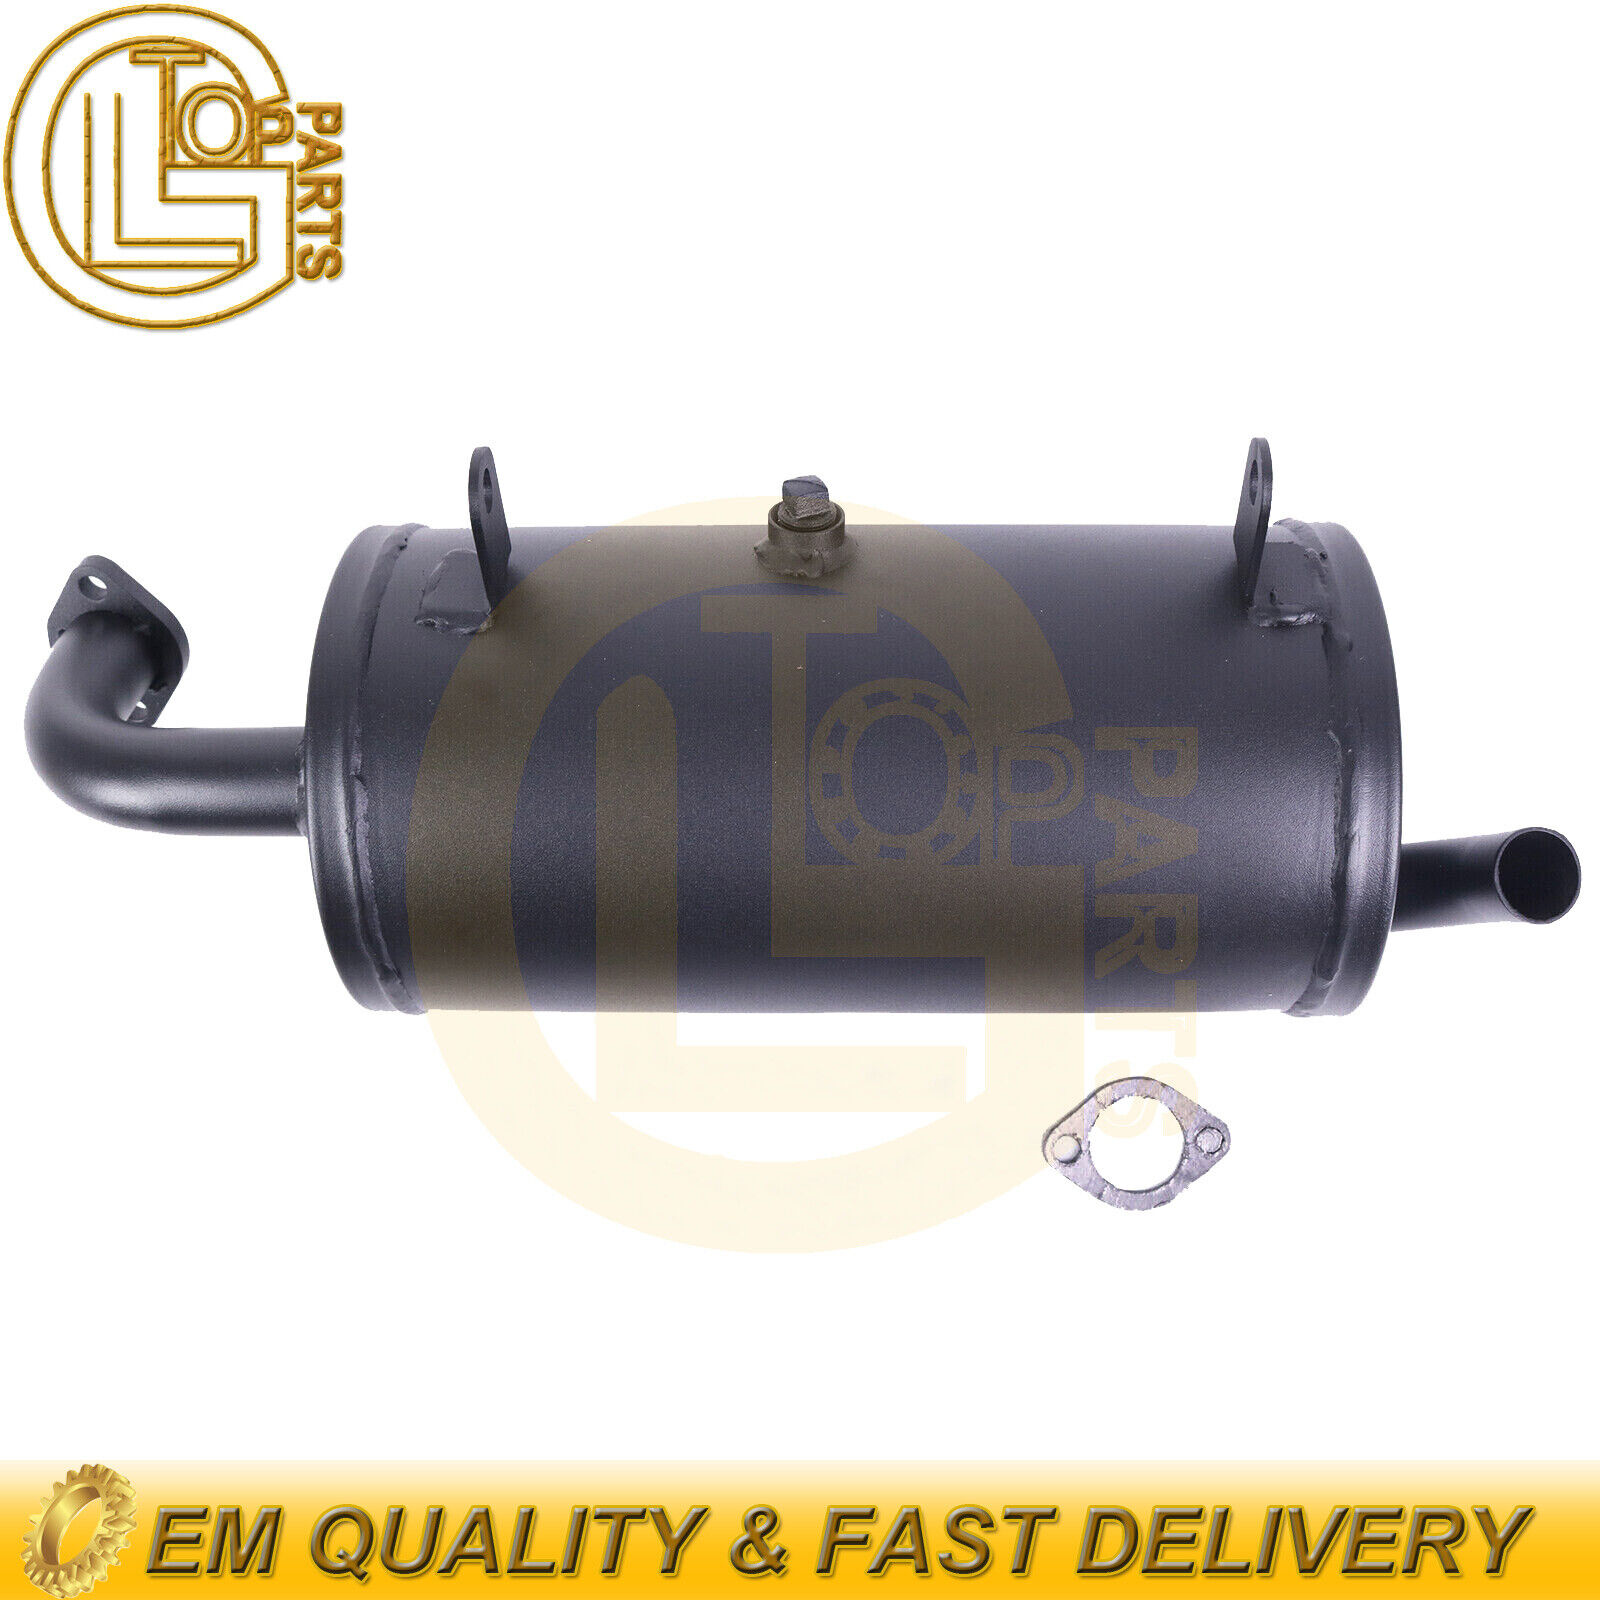 Exhaust Muffler& Gasket 18091-0487 for Kawasaki Mule 600/ 610/ SX 2012-21